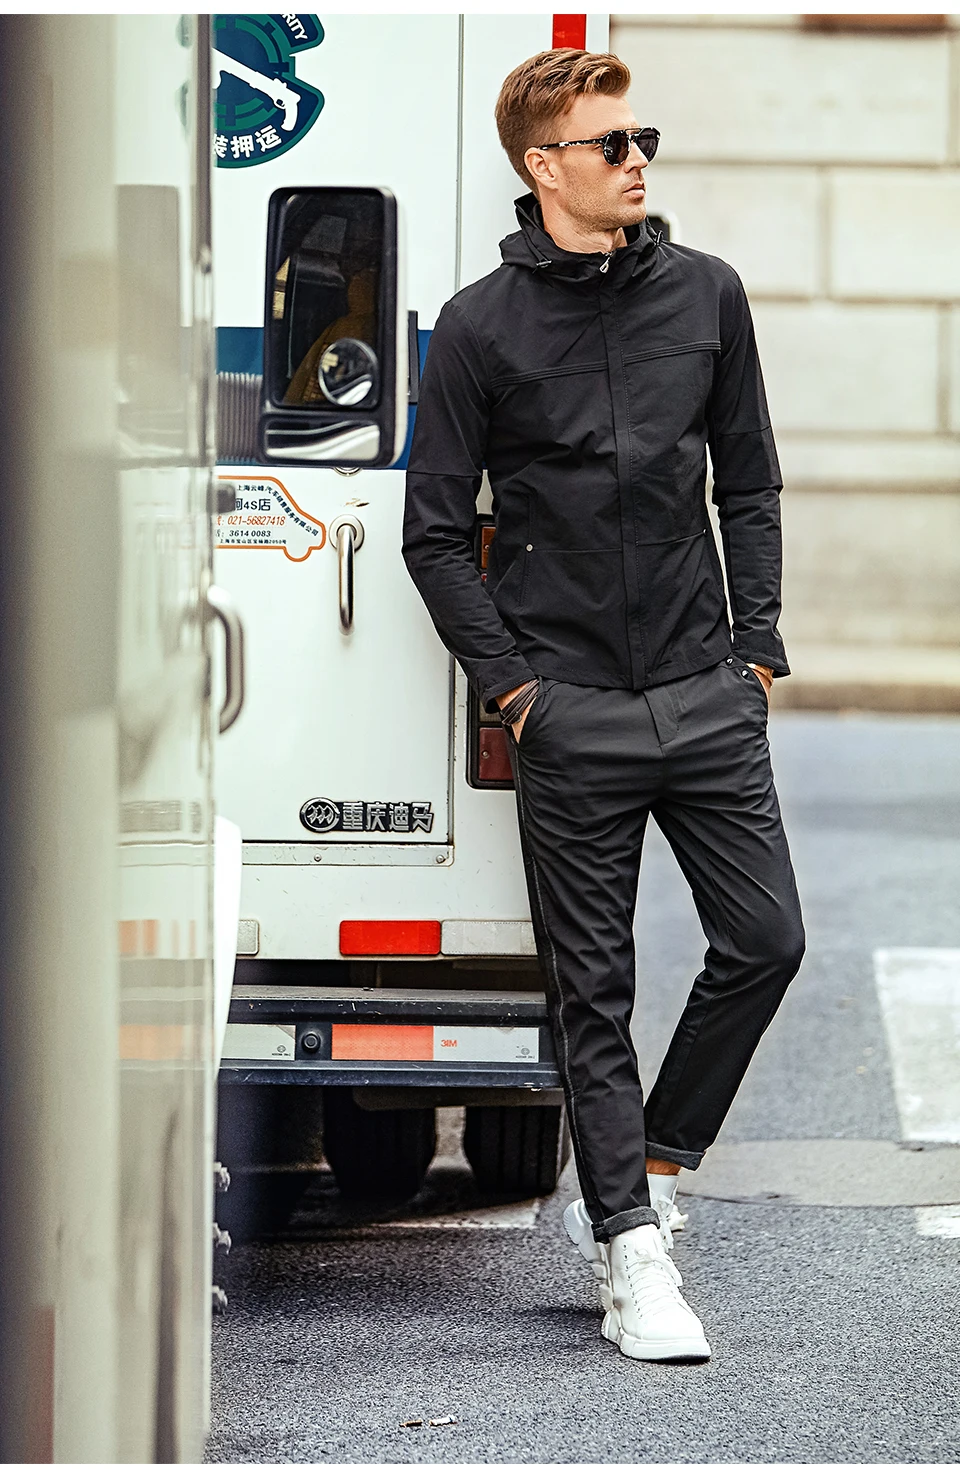 Enjeolon Топ бренд Модный бомбер толстовки куртки мужские с капюшоном черные мужские s куртки пальто толстовки куртка мужская классная одежда WT0222